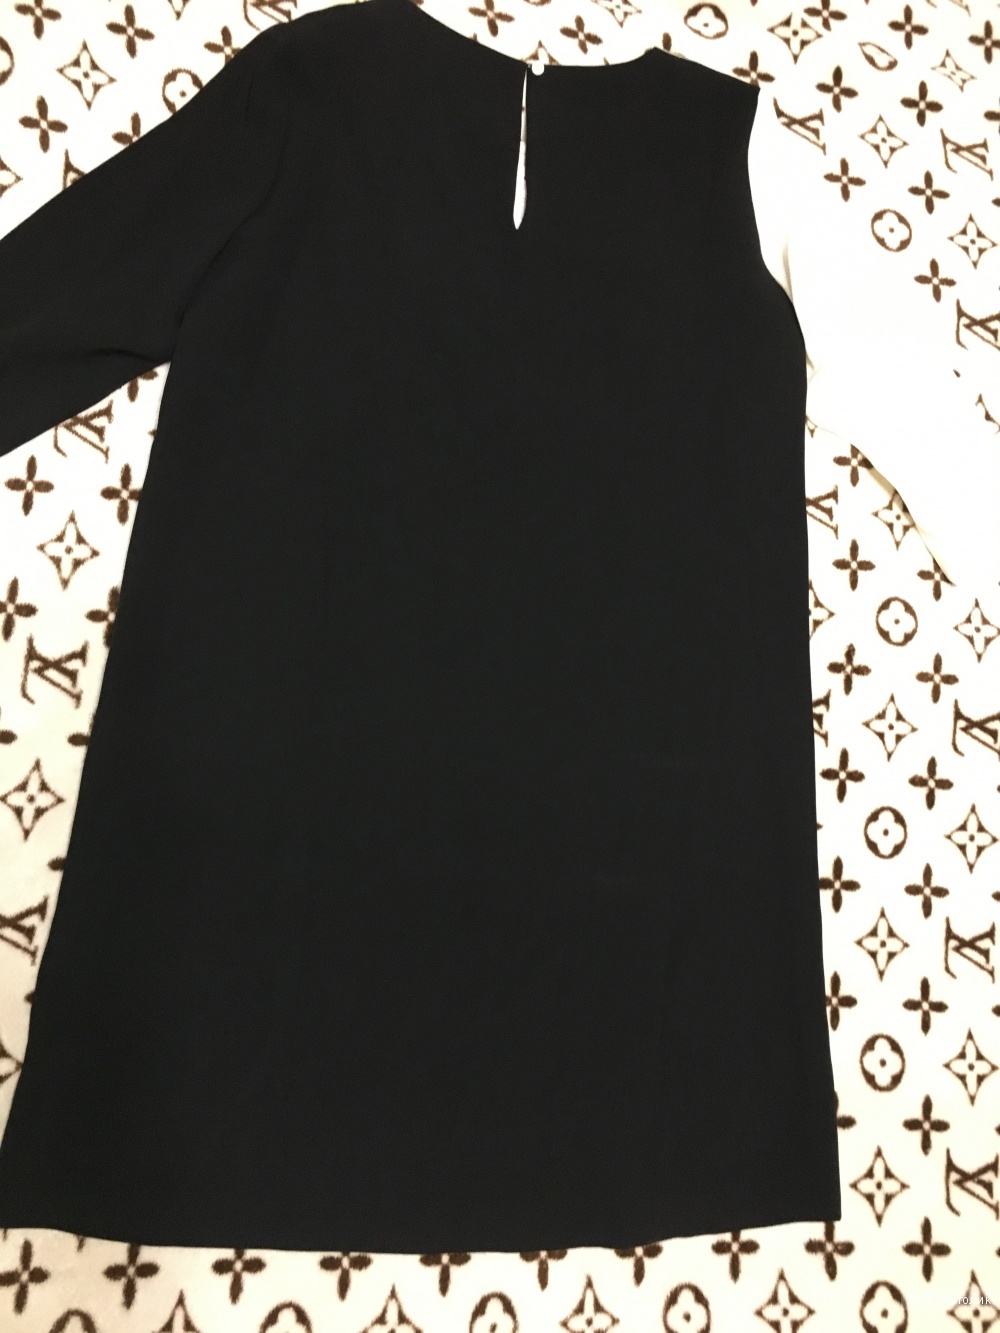 Платье SEVENTY by SERGIO TEGON, 48 (Российский размер) дизайнер:46 (IT). Черный - слоновая кость